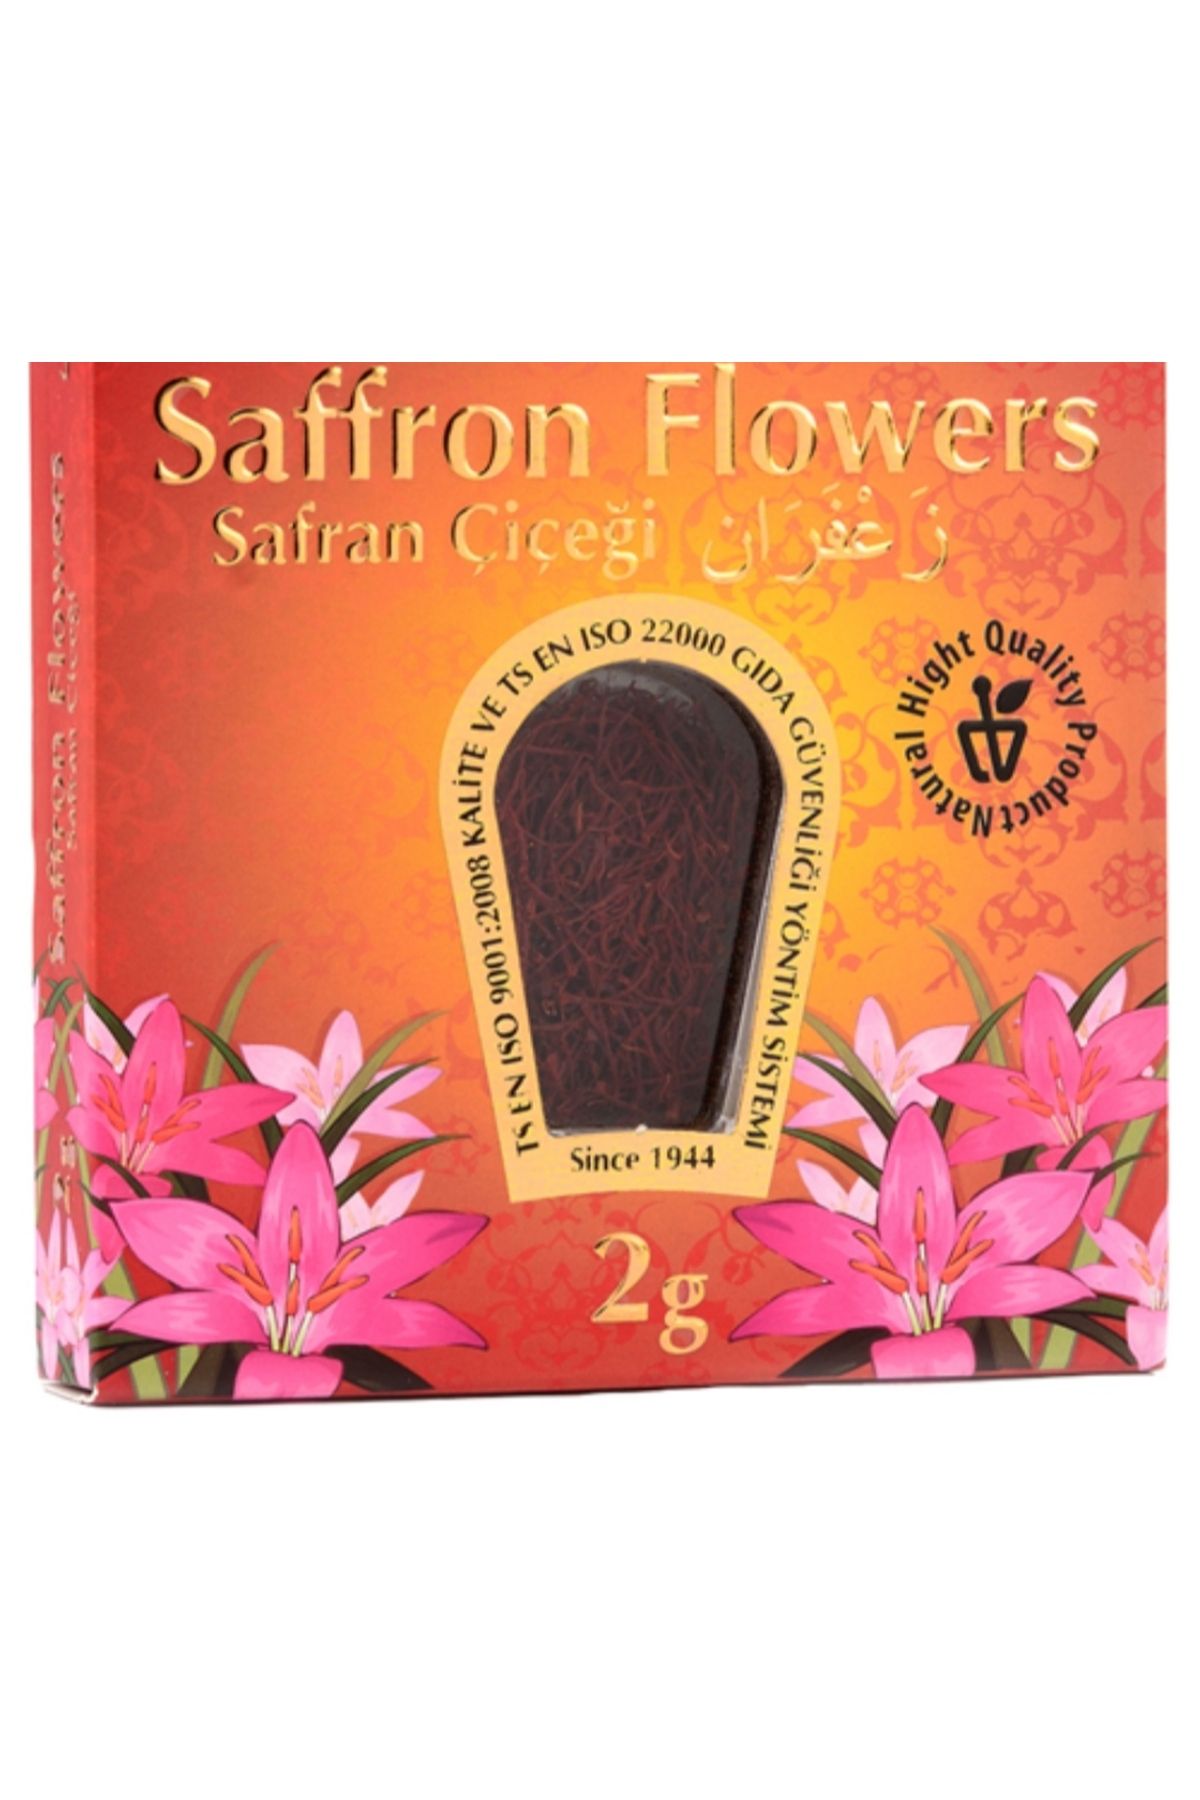 burfez Safran Çiçeği Saffron Flowers - 2 G